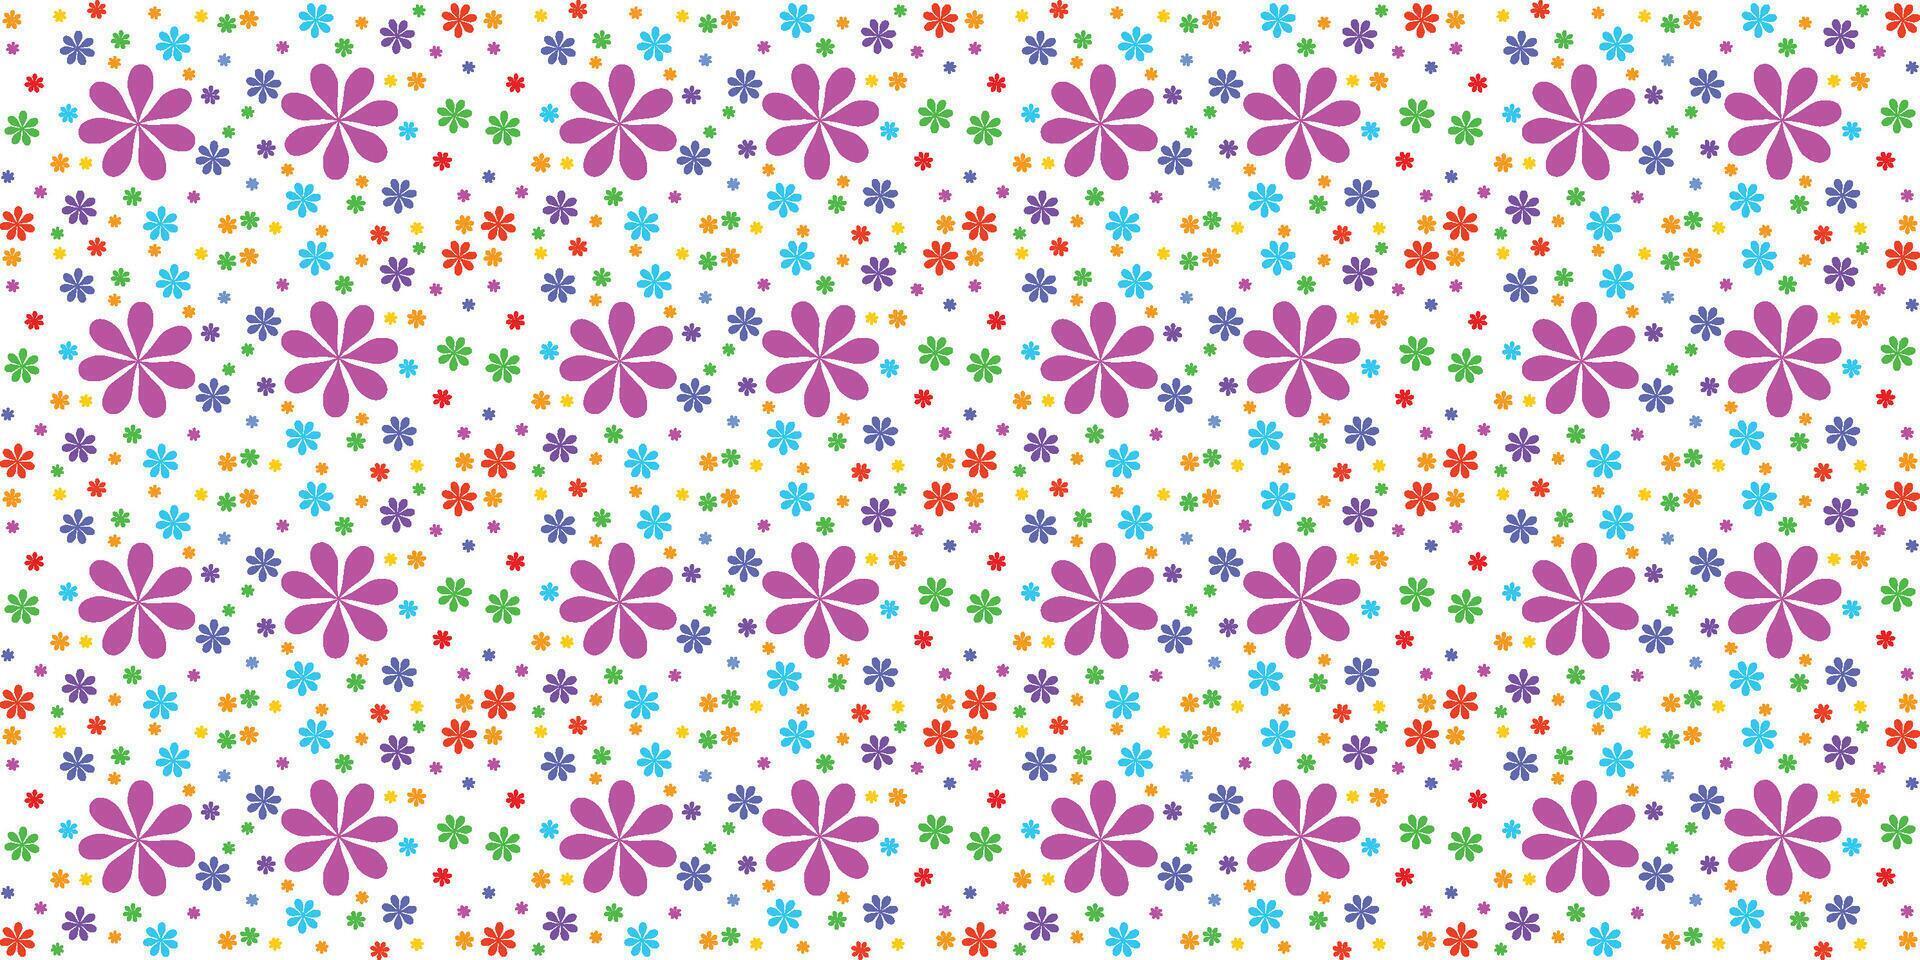 Blume Muster Design nahtlos auf Weiß Hintergrund vektor